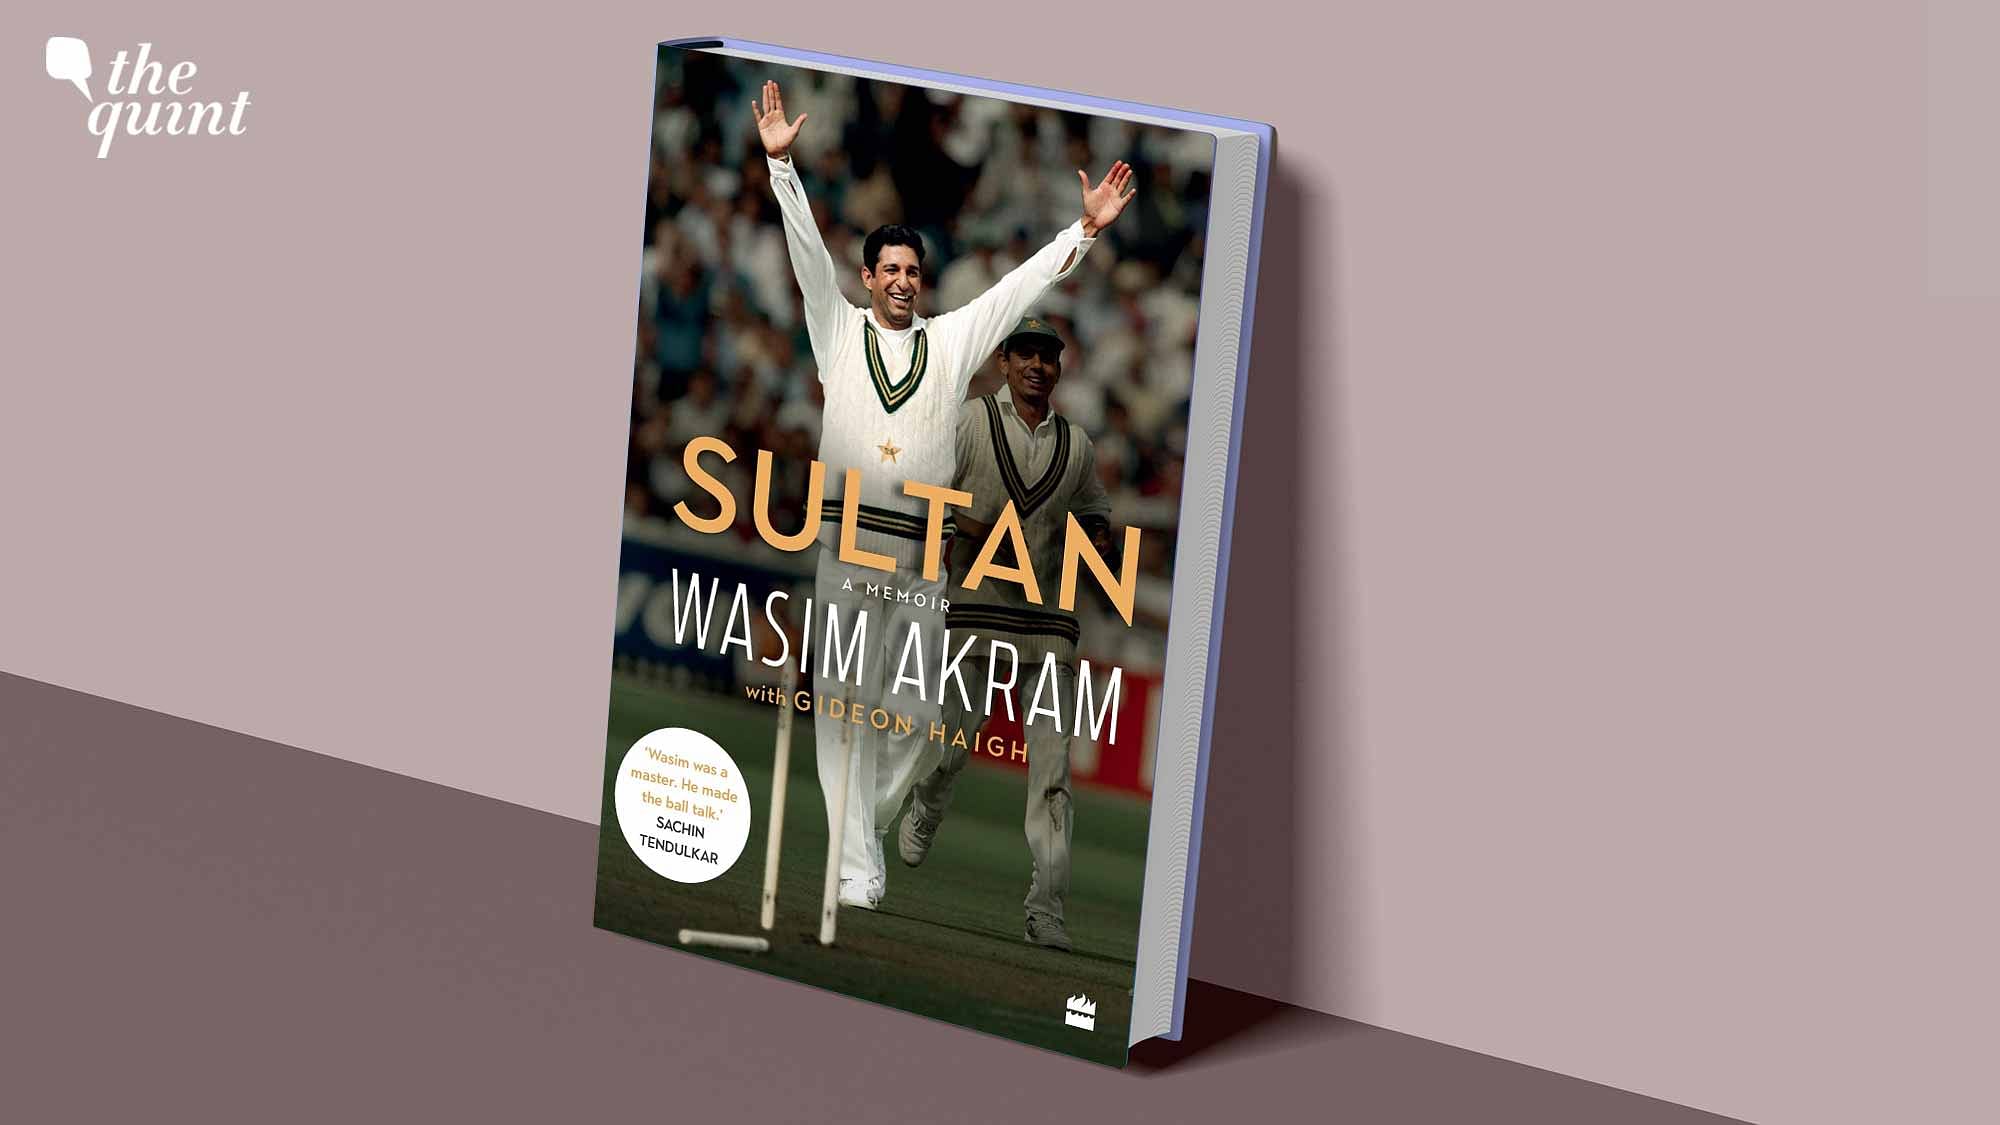 <div class="paragraphs"><p>A review of Wasim Akram's memoir.</p></div>